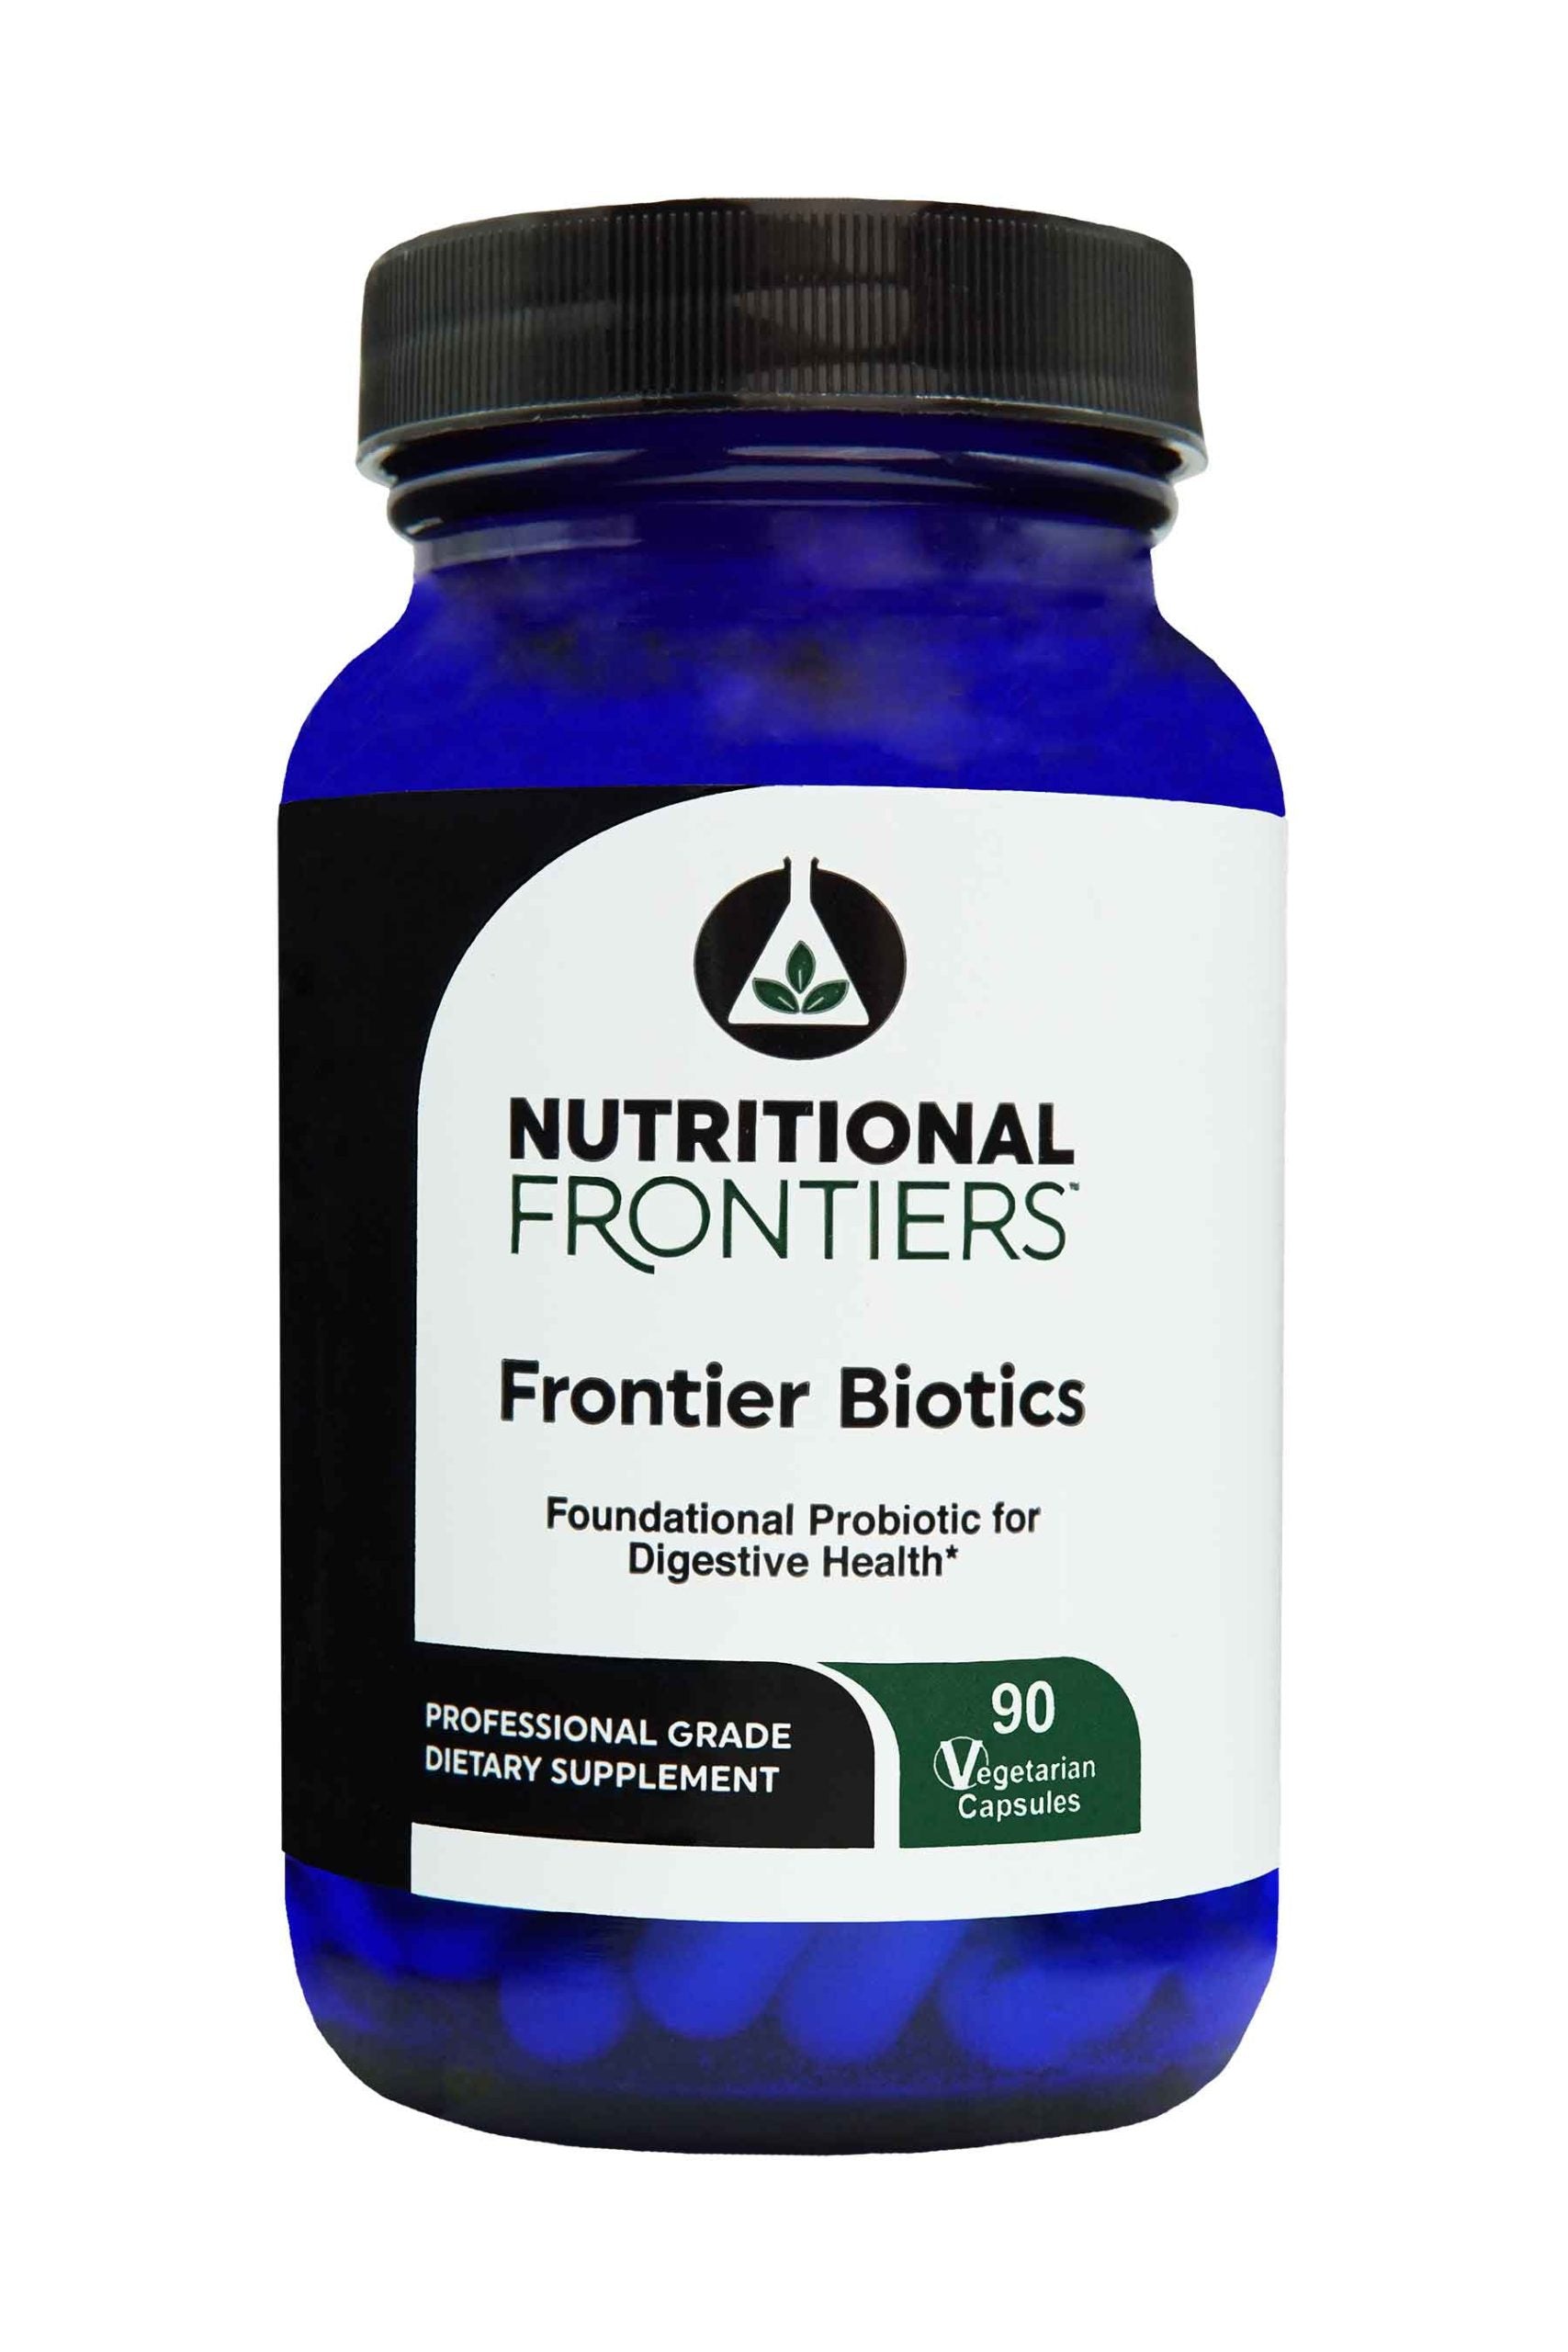 Nutritional Frontiers Frontier Biotics